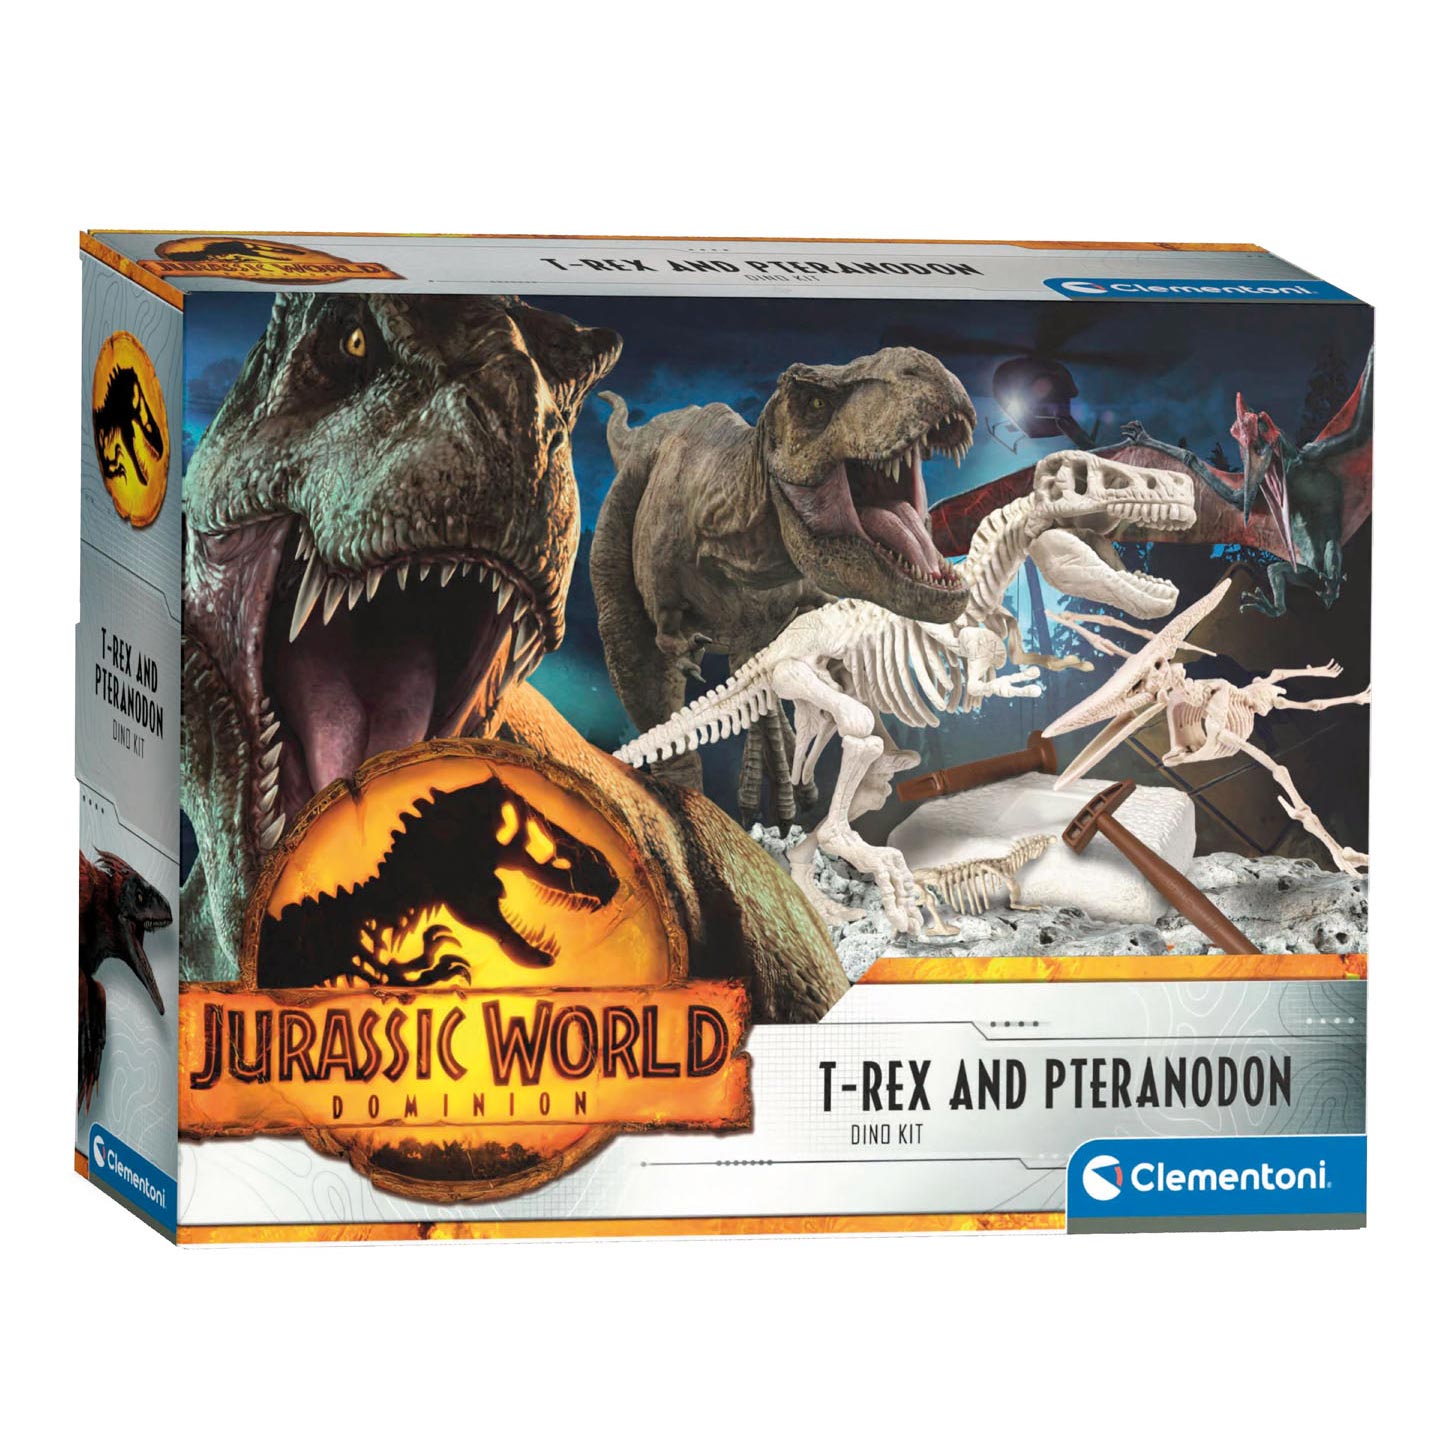 Puzzles e Jogos : Rex London Kit de Escavação de Dinossauro